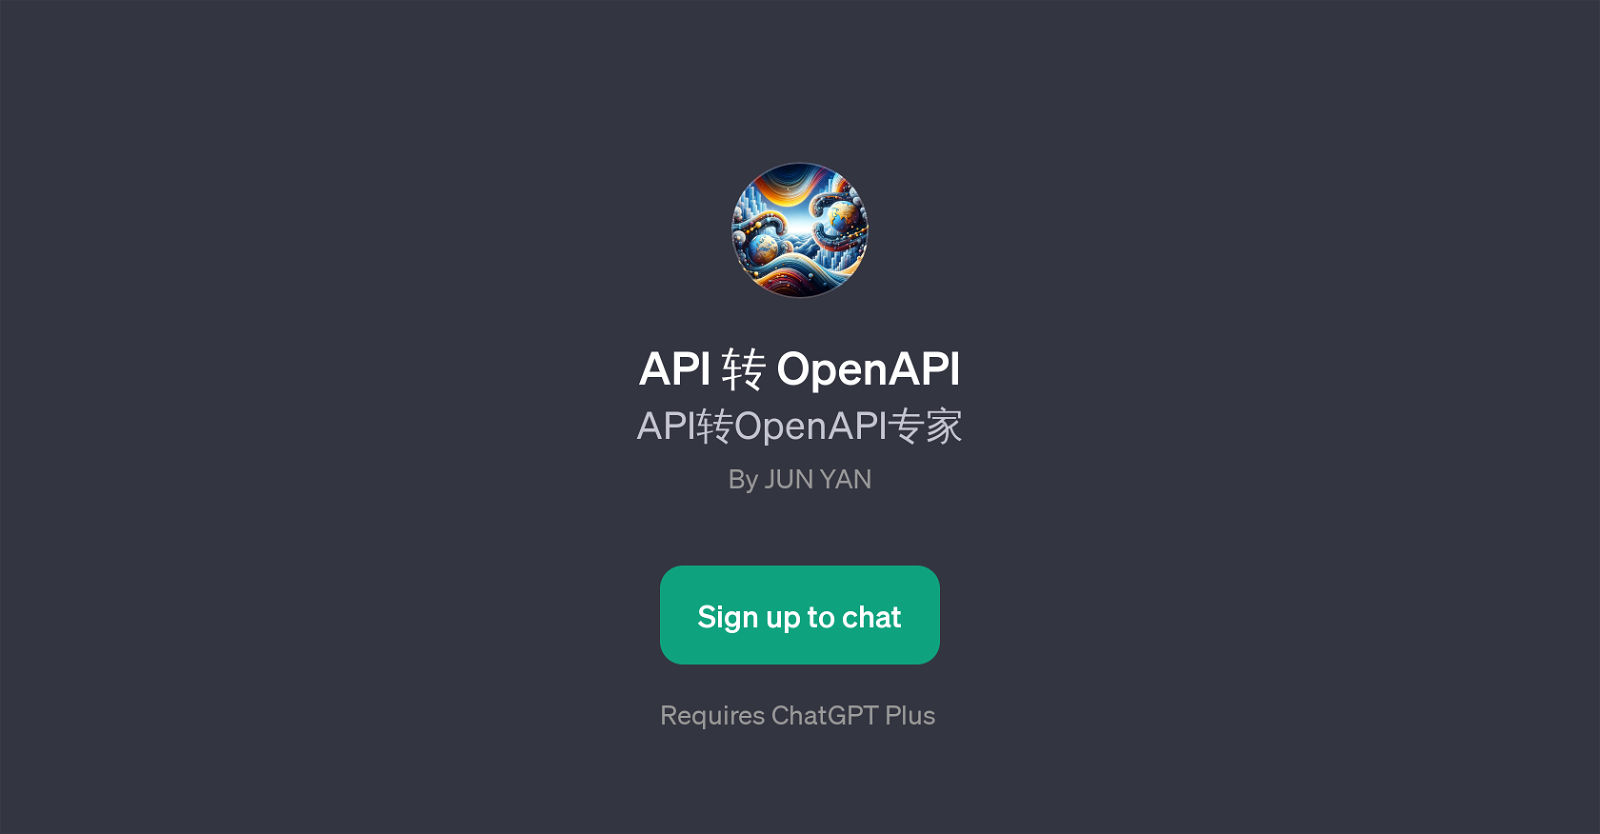 API  OpenAPI website